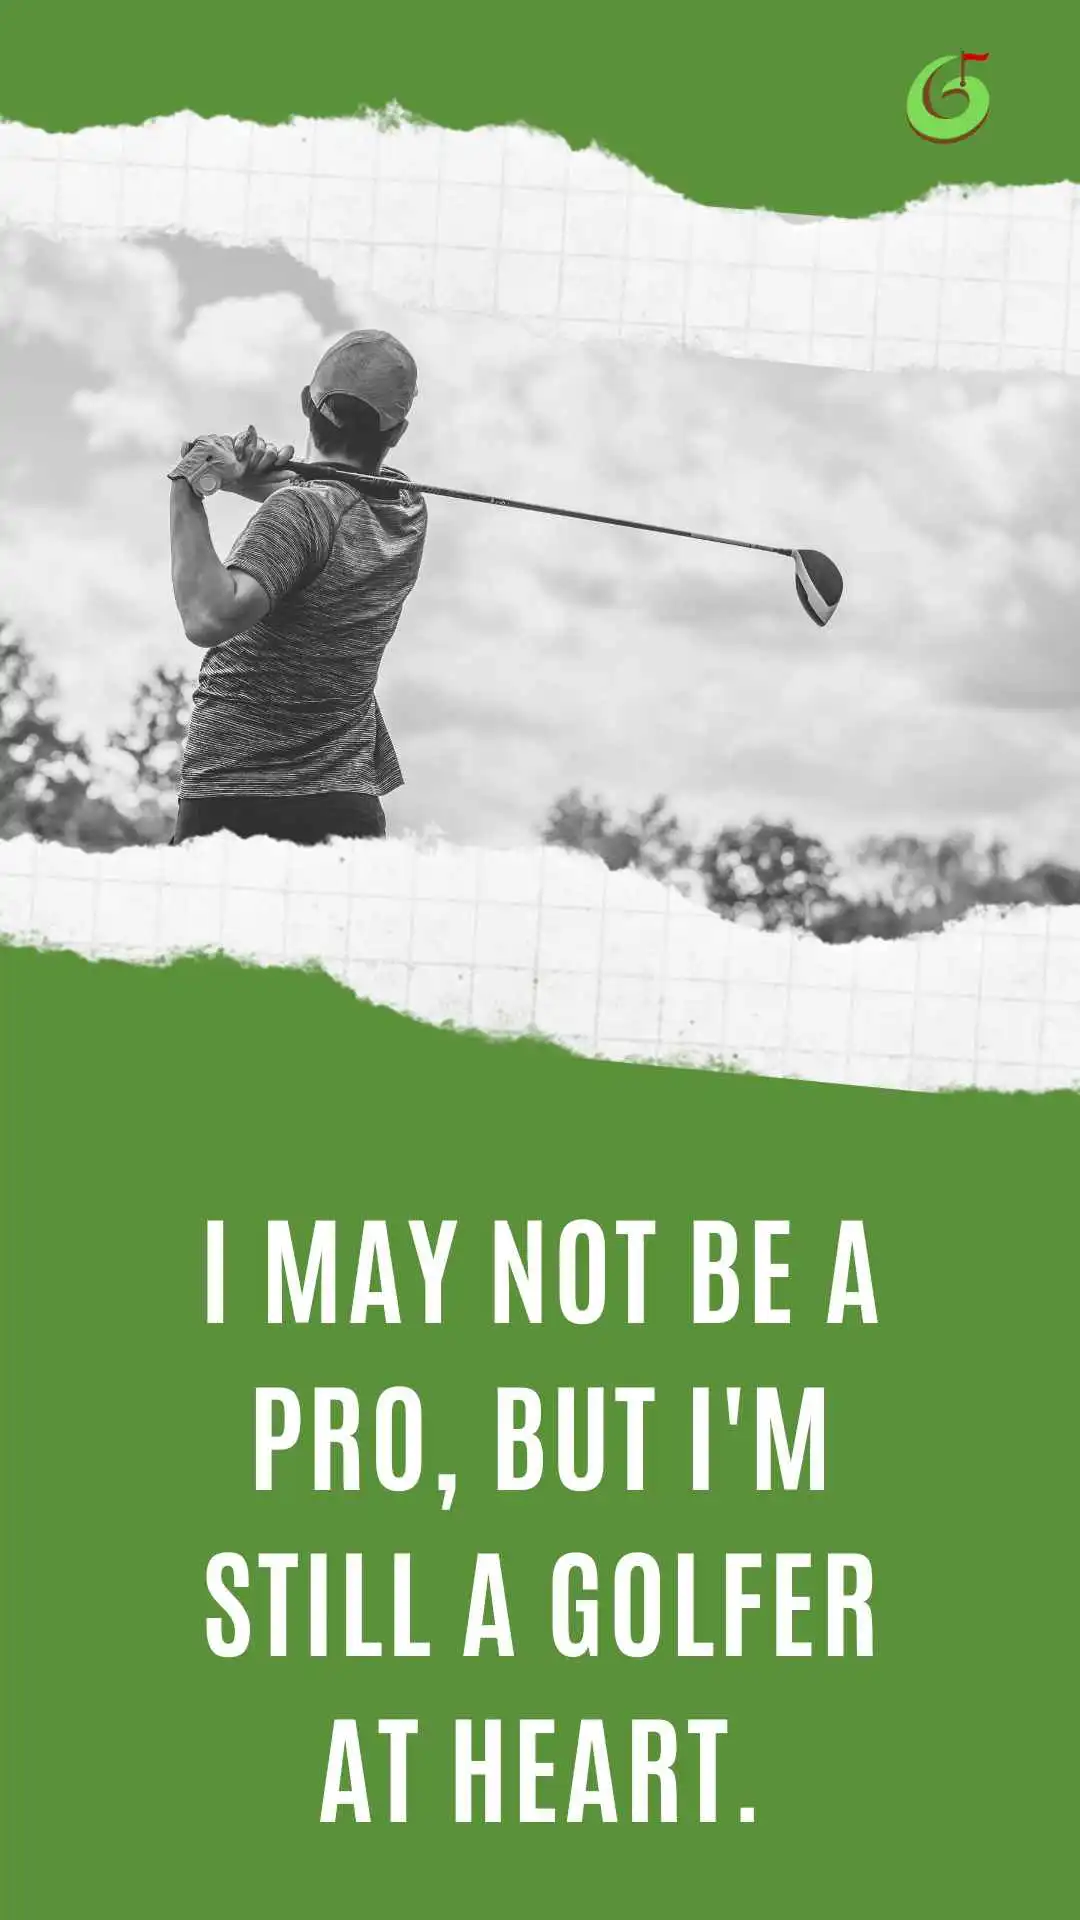 I may not be a pro, but I'm still a golfer at heart